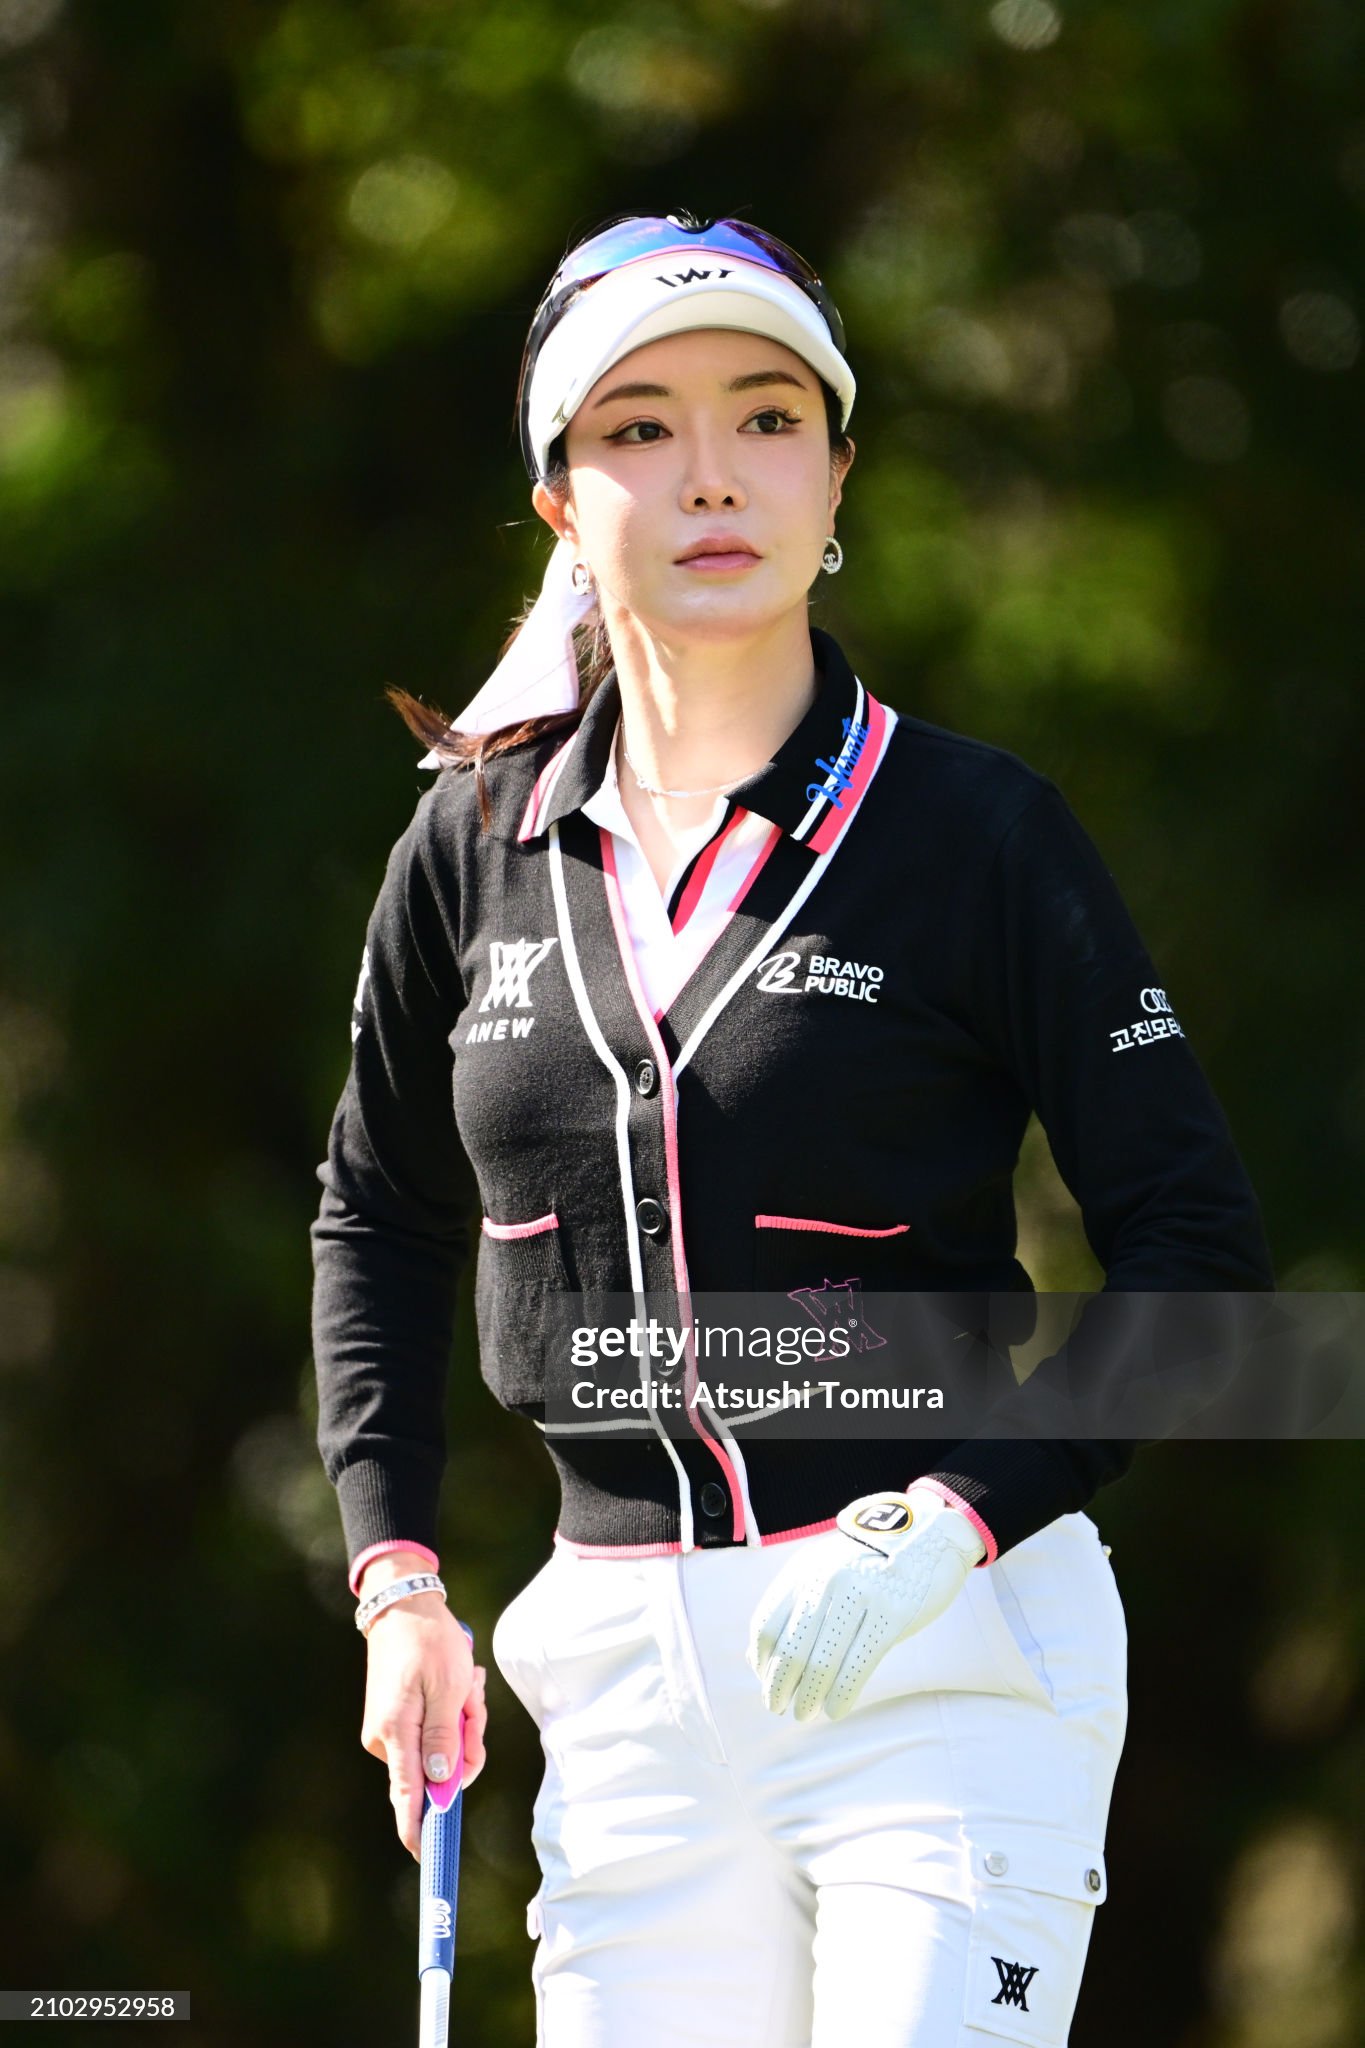 https://media.gettyimages.com/id/2102952958/photo/axa-ladies-golf-tournament-in-miyazaki-round-one.jpg?s=2048x2048&w=gi&k=20&c=v4zKb1juBC8-c6he0eE5tDSxohwOgS07qfBIwz_NfAA=